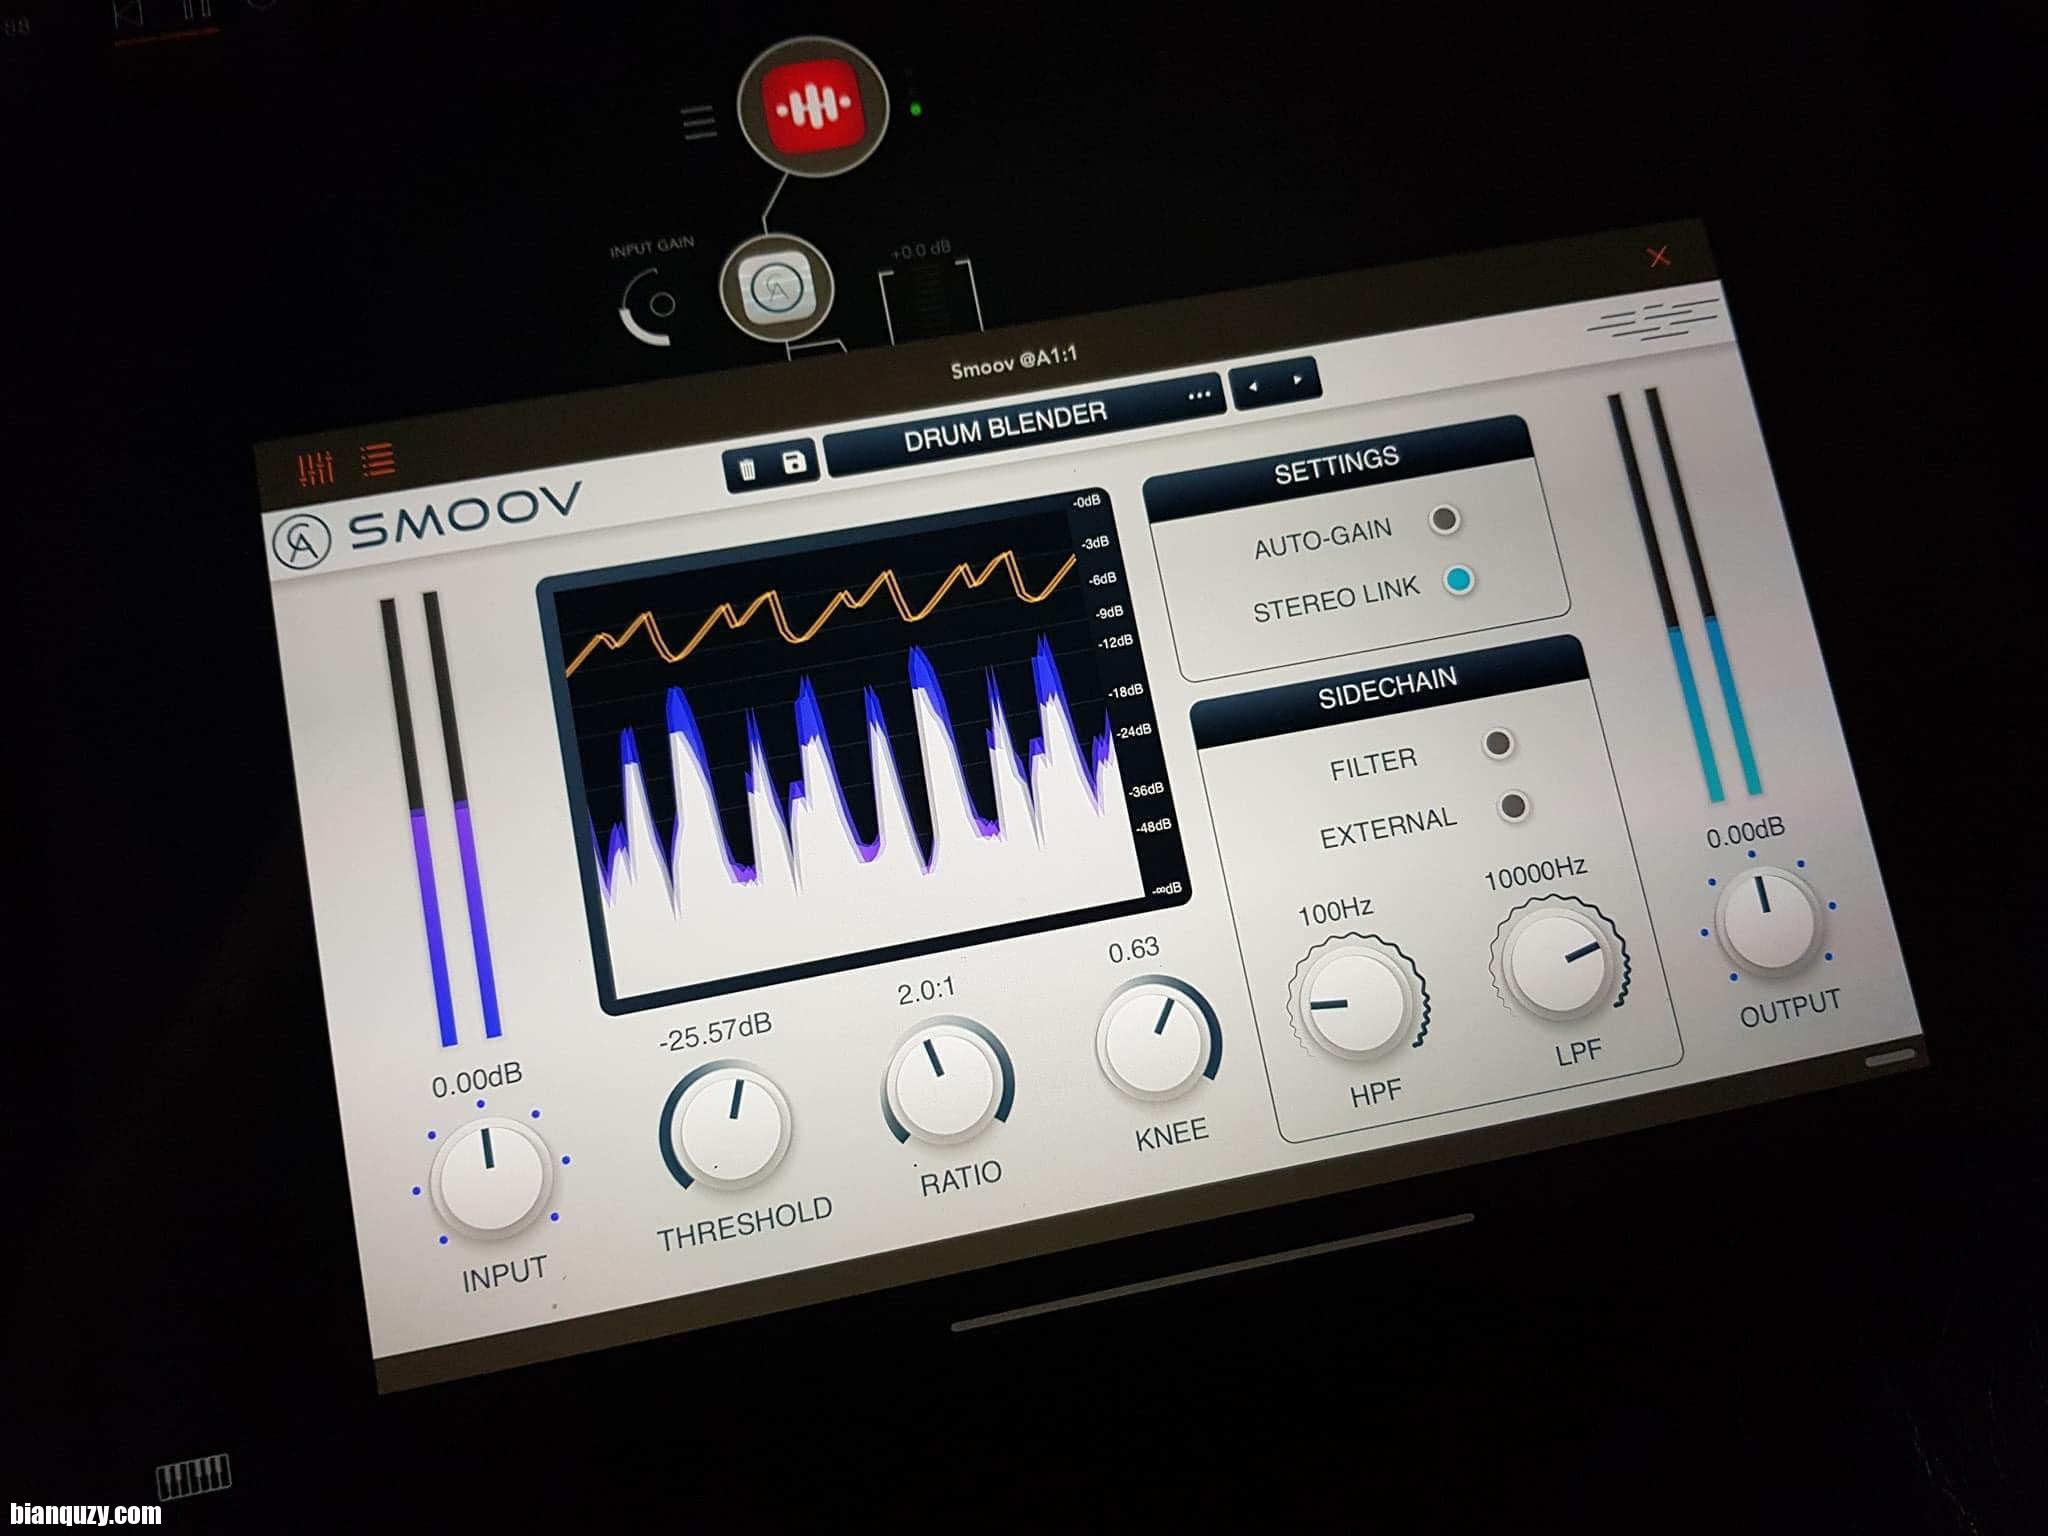 download the last version for iphoneCaelum Audio Smoov 1.1.0